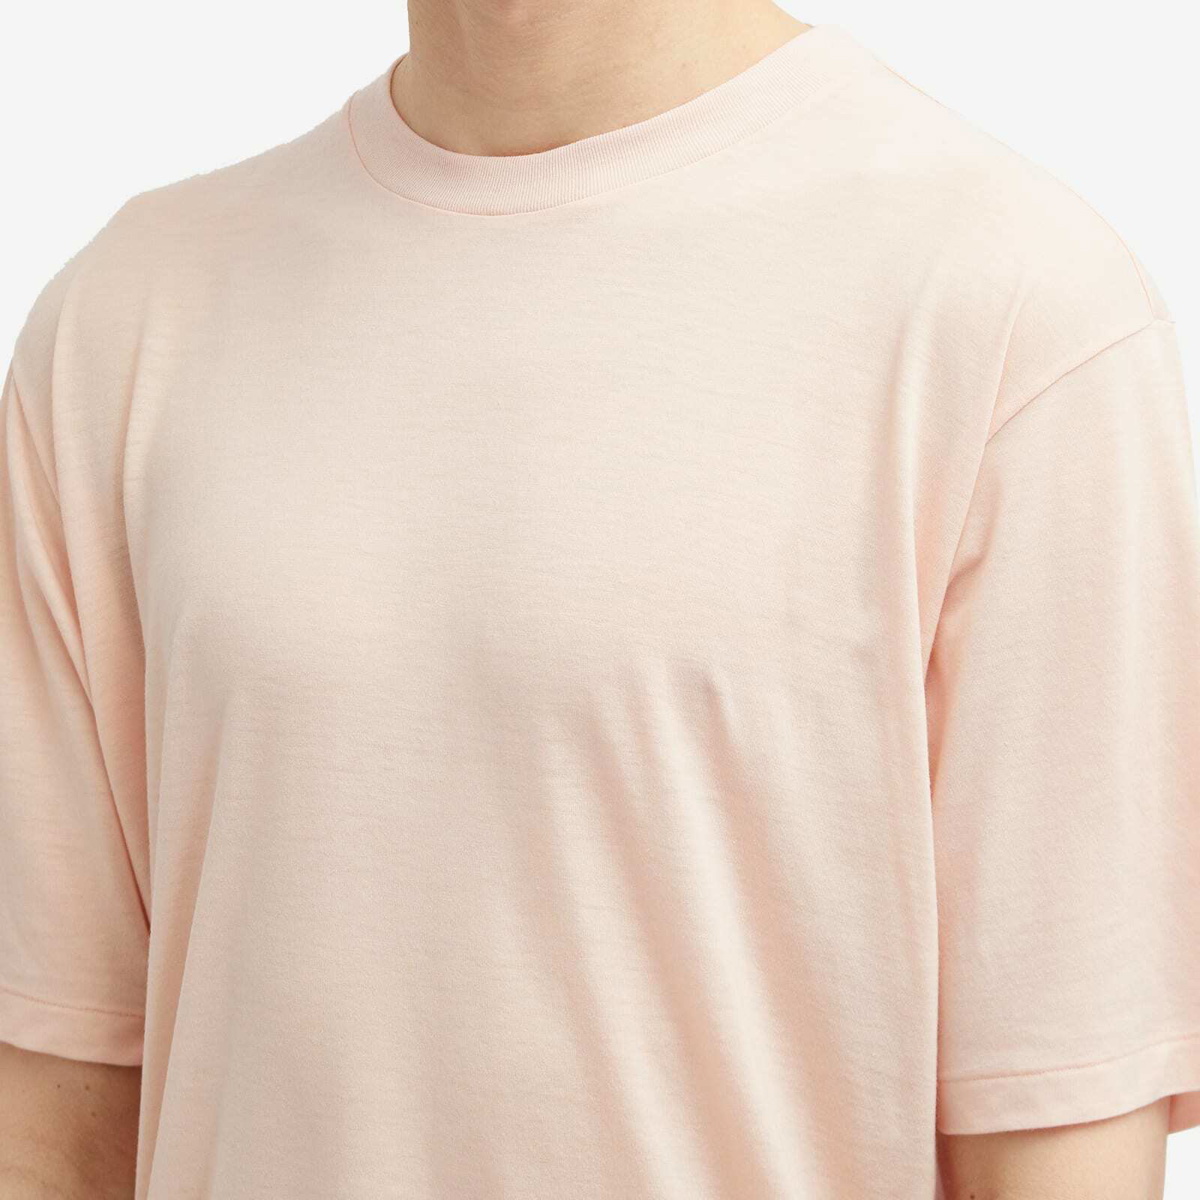 Auralee Men's Super Soft Wool Jersey T-Shirt in Light Pink Auralee